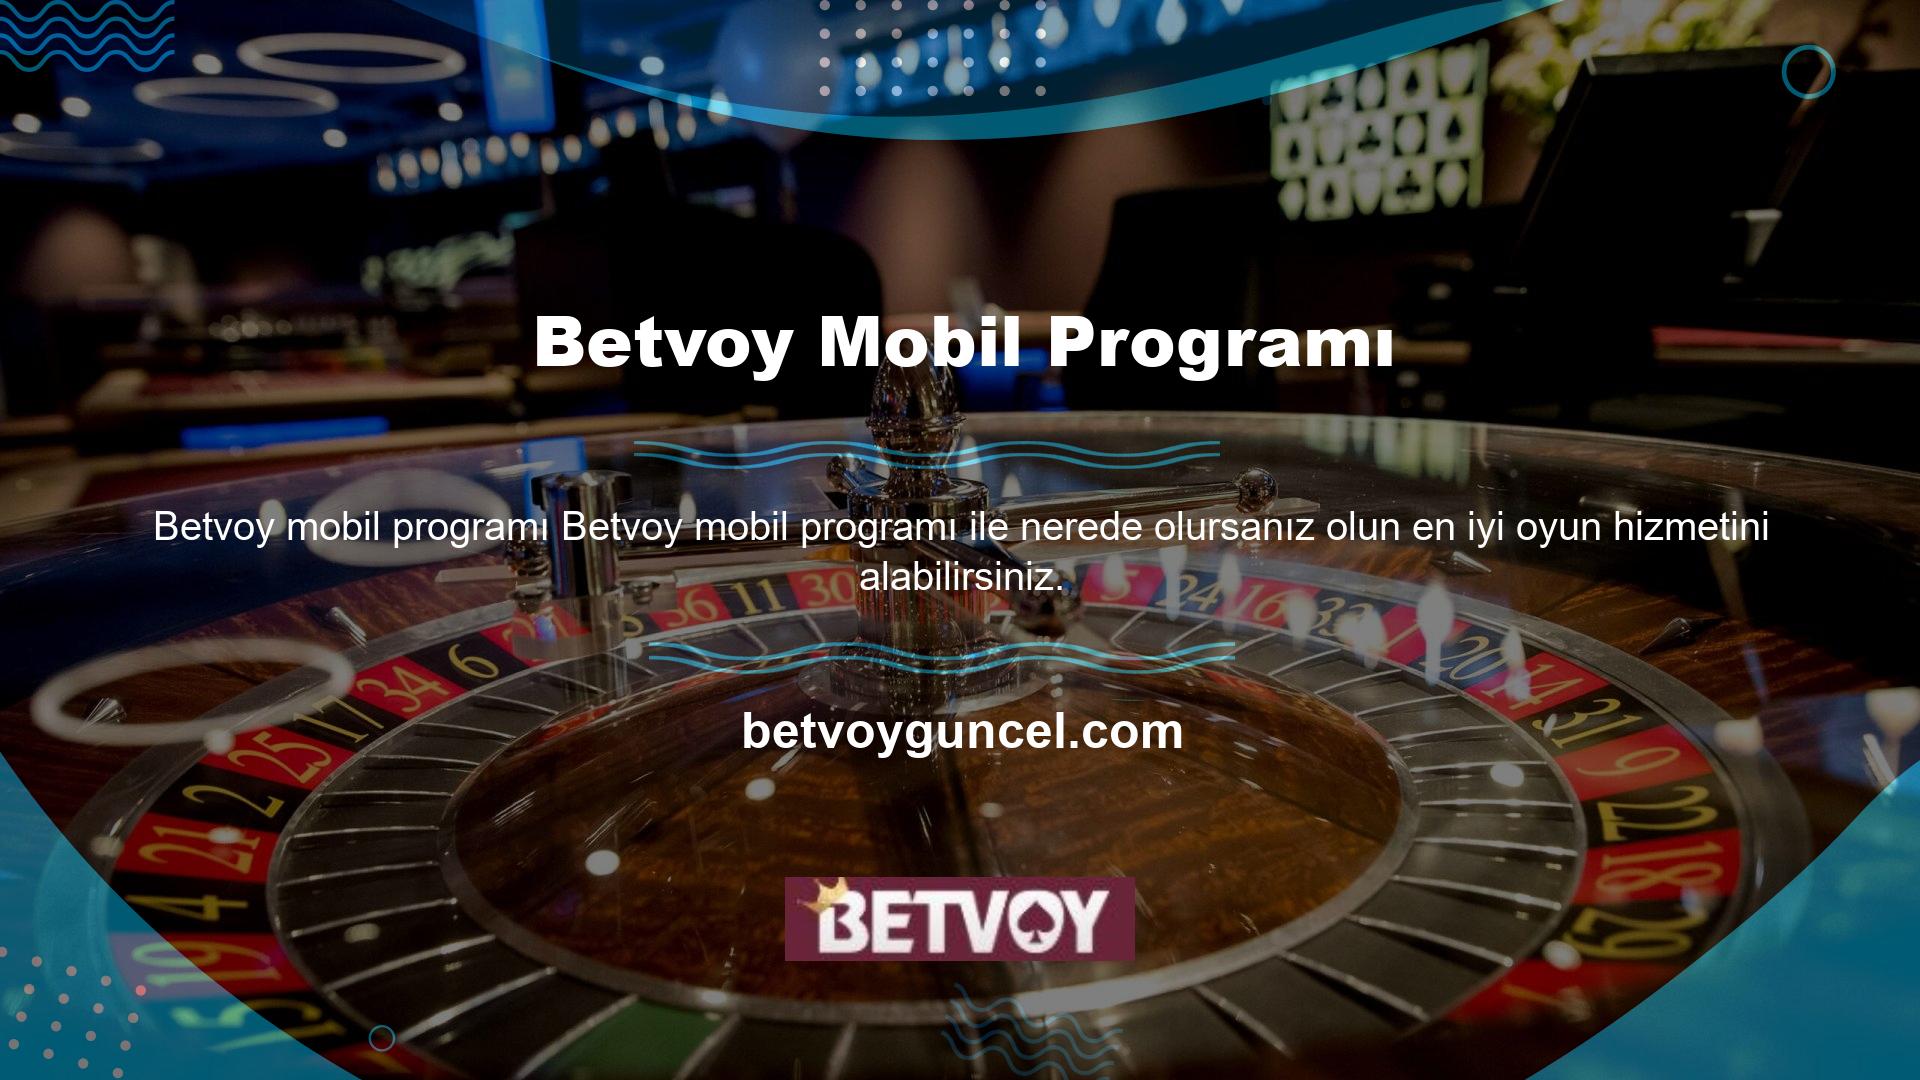 Platformun mobil program desteği sunması sayesinde bahis ve casino içeriklerinden uzak kalmayacaksınız